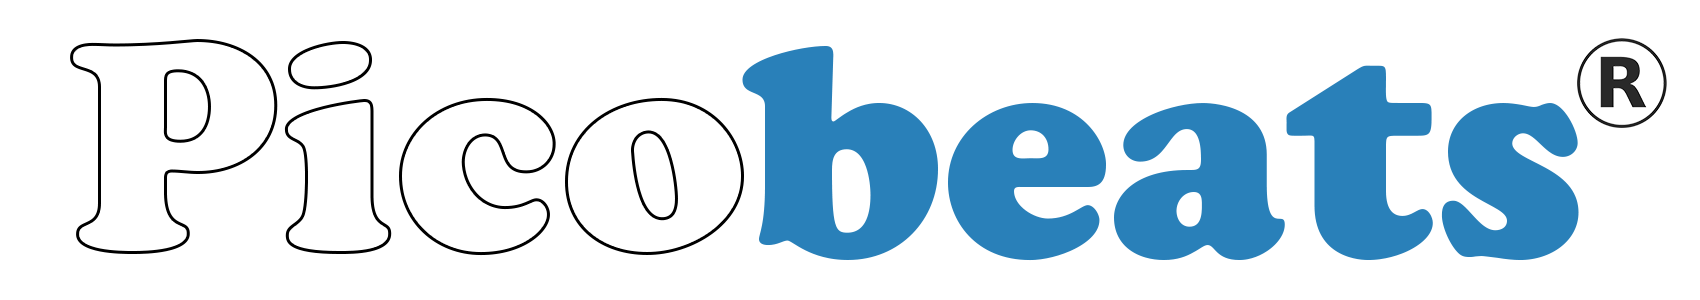 picobeats-logo